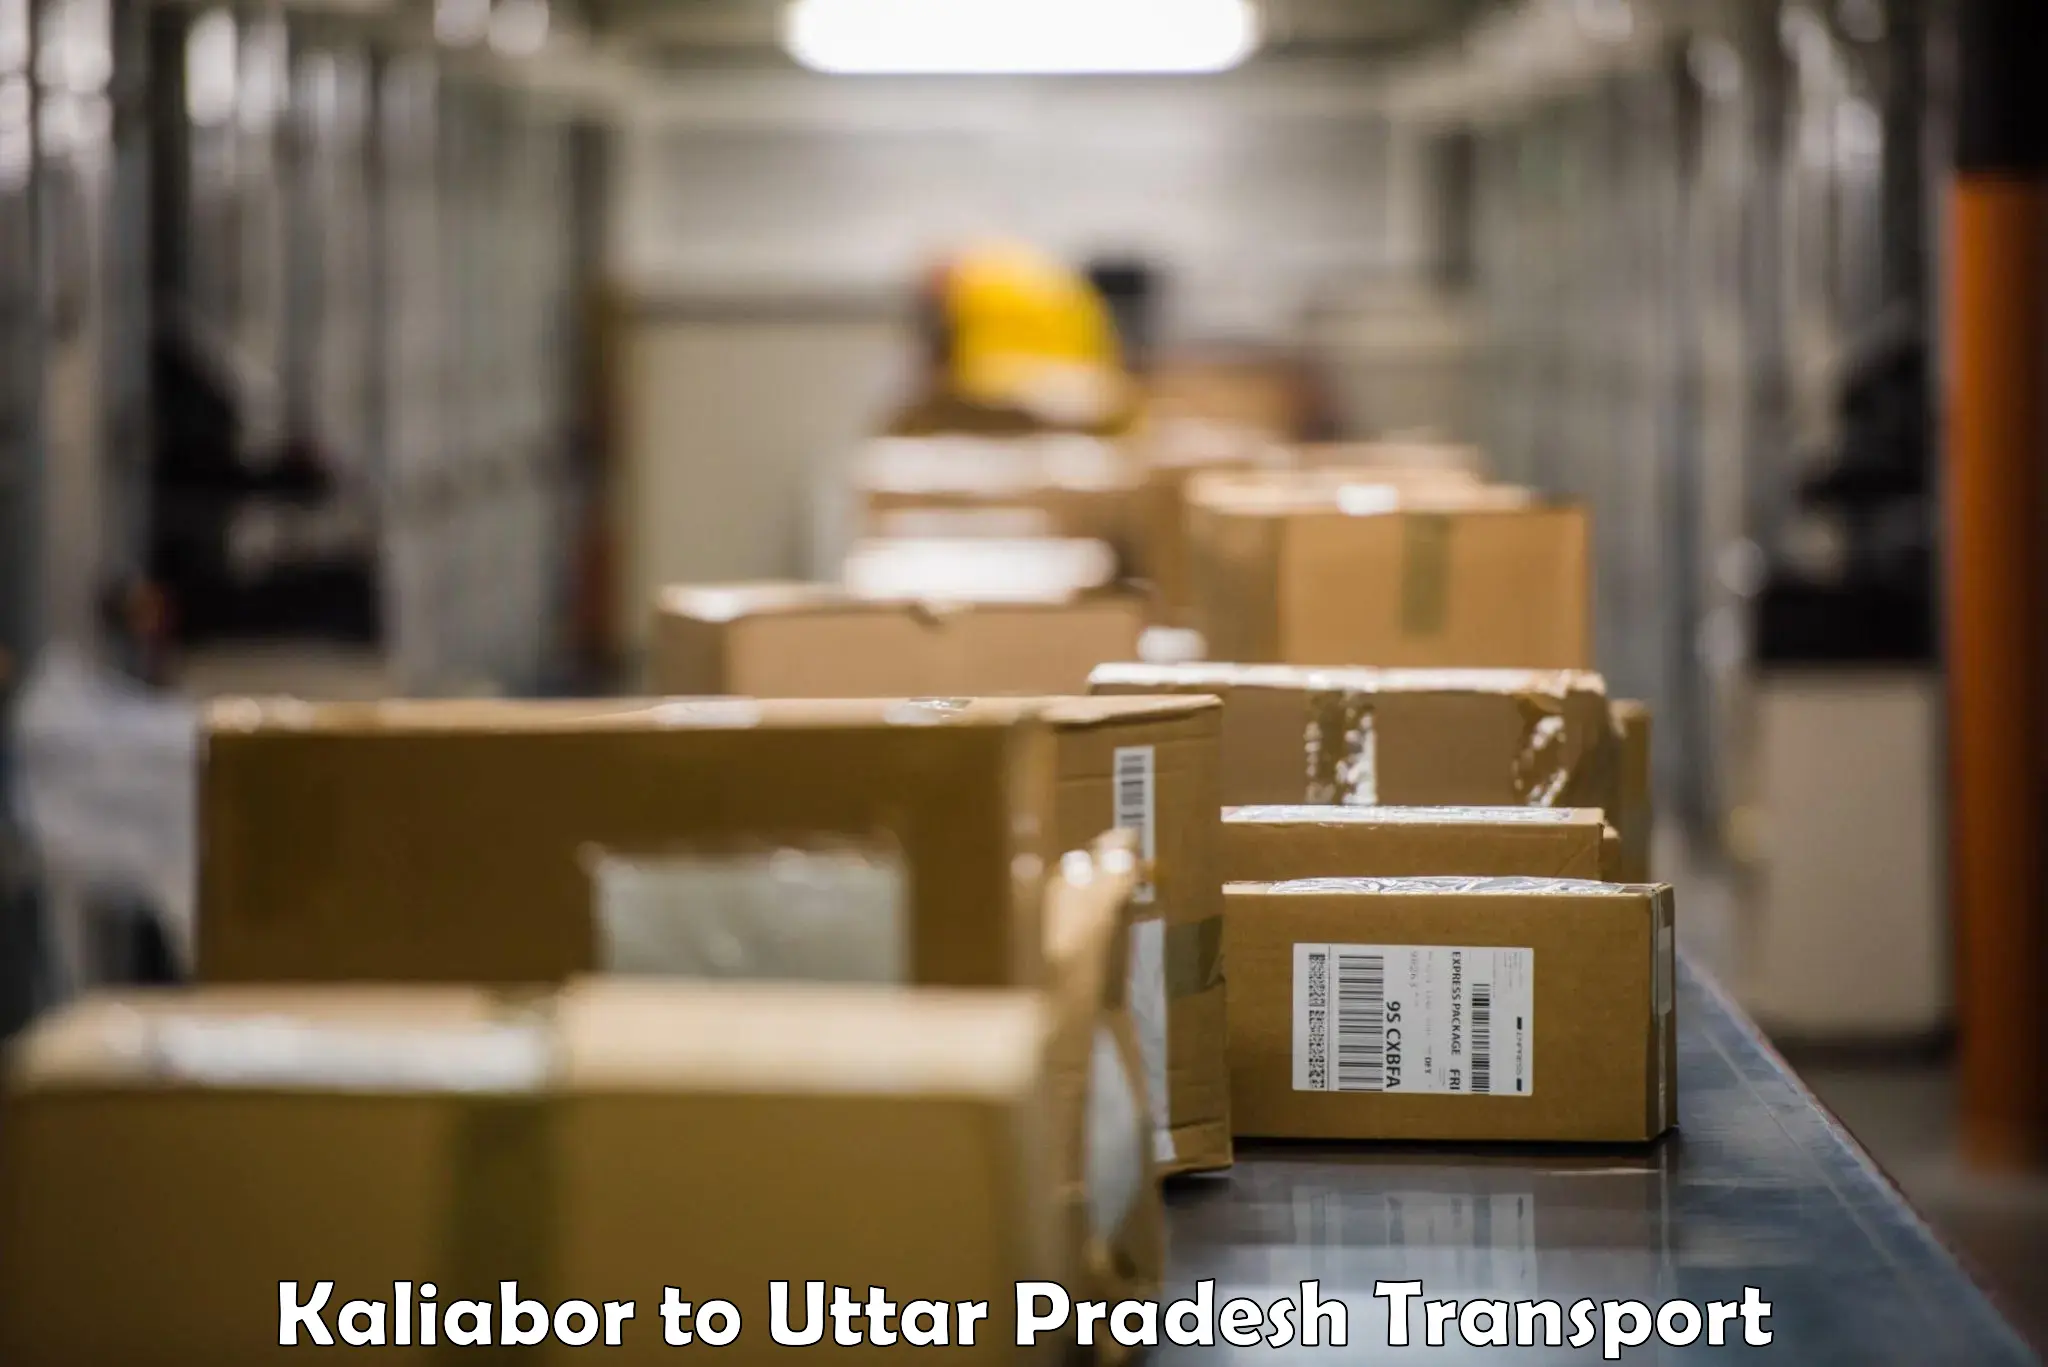 International cargo transportation services Kaliabor to Uttar Pradesh